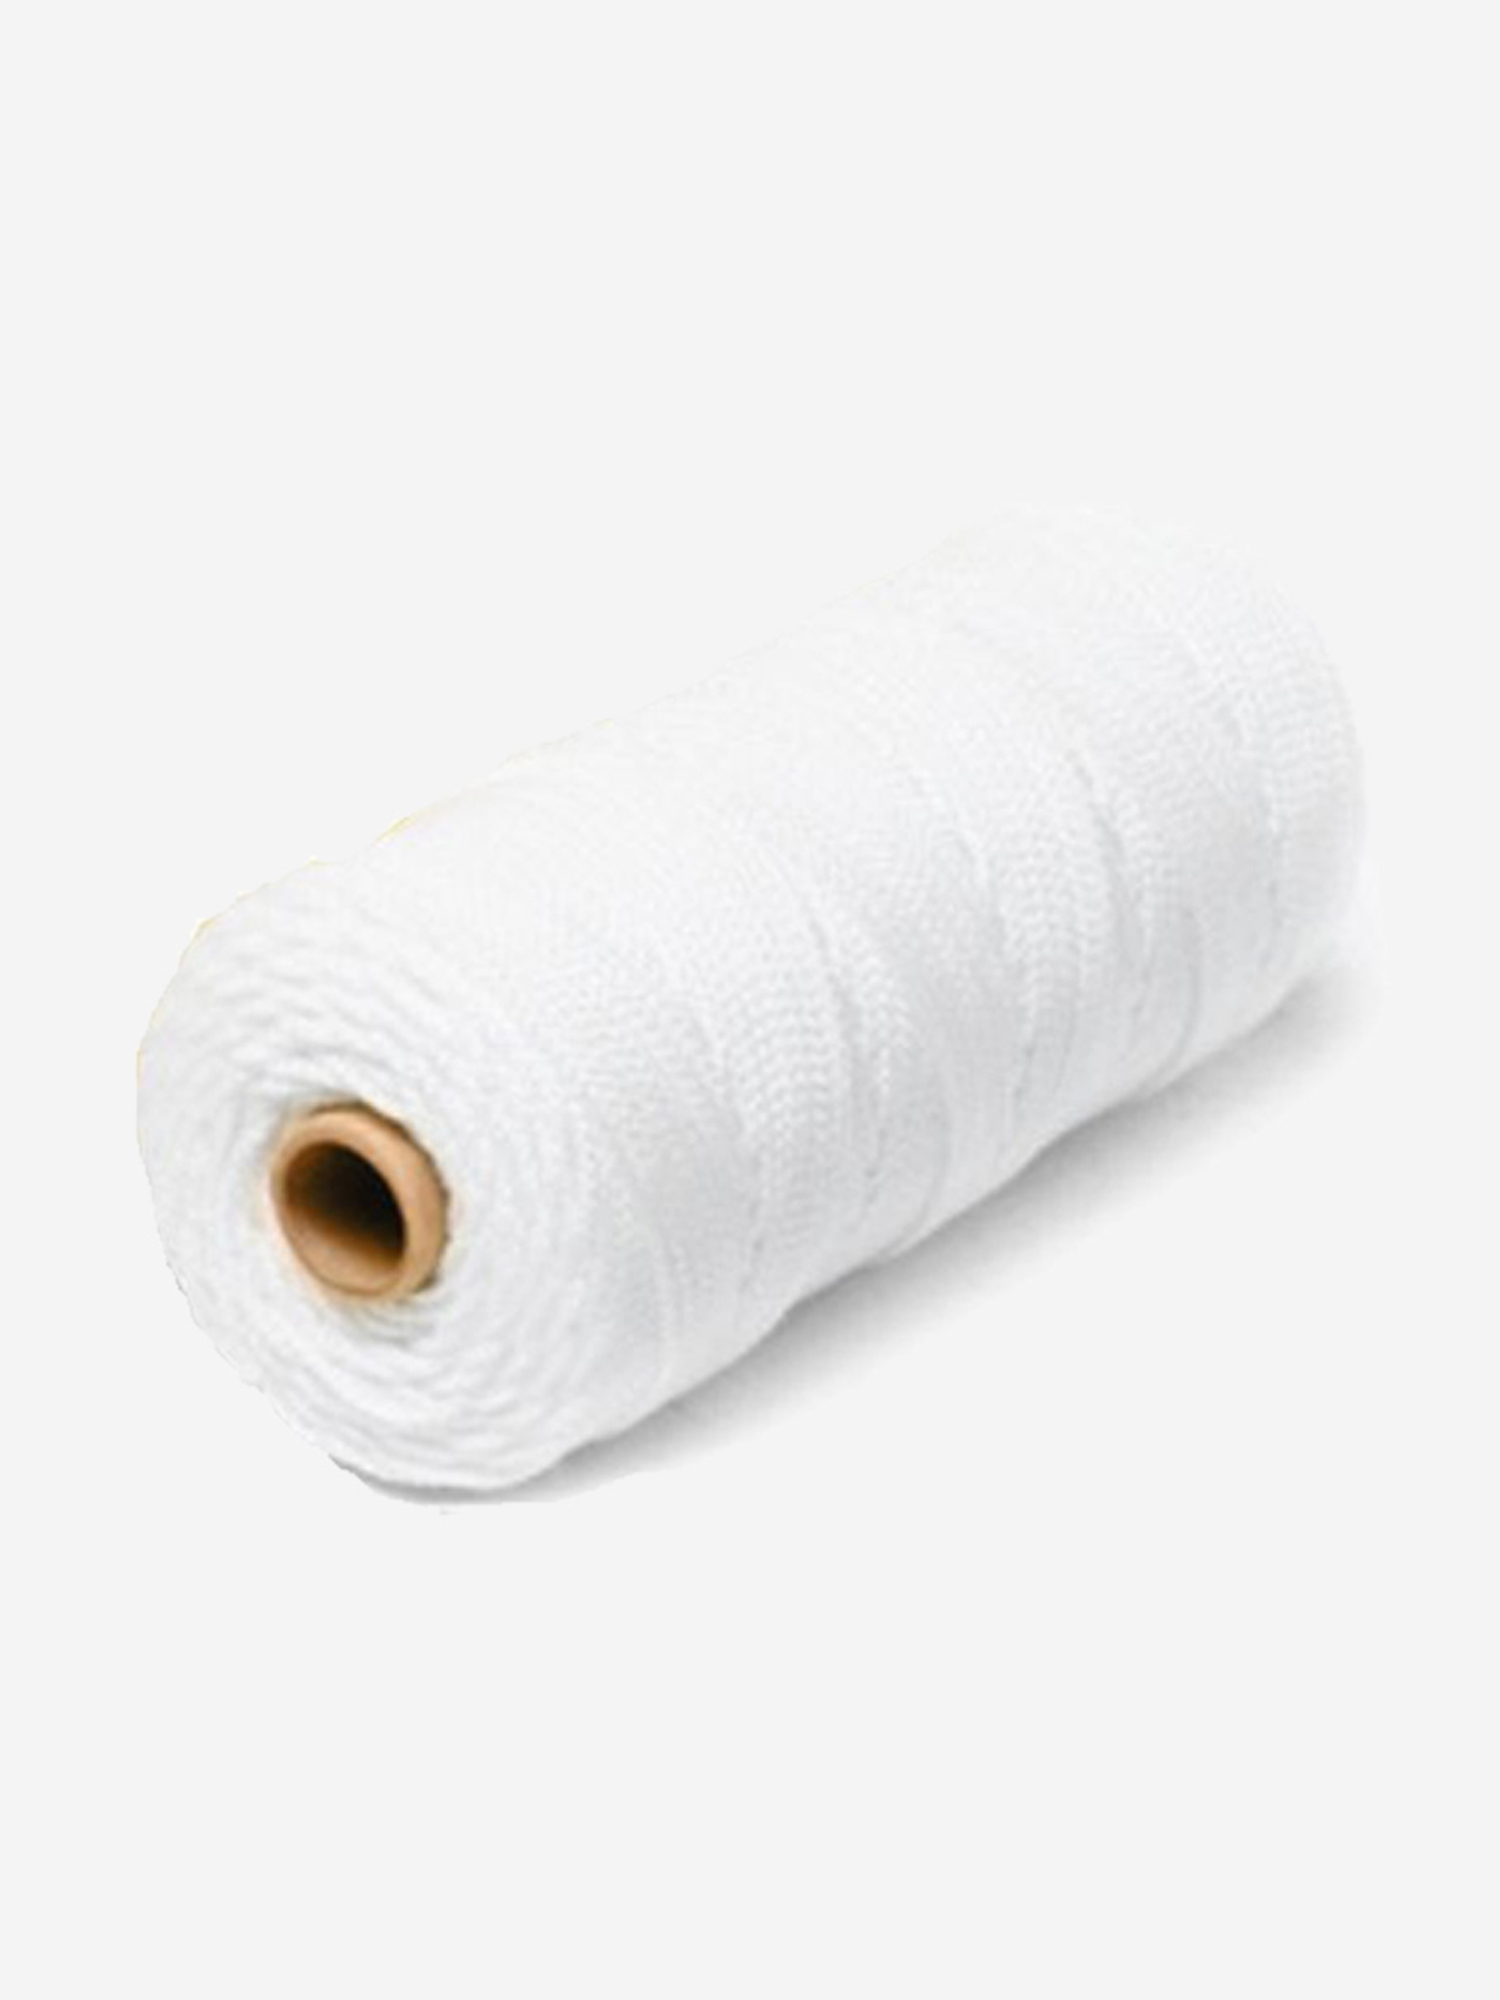 Шнур плетеный Петроканат СТАНДАРТ 8,0 мм (200 м) белый, п/п мешок (промышленный/крепежный), Белый